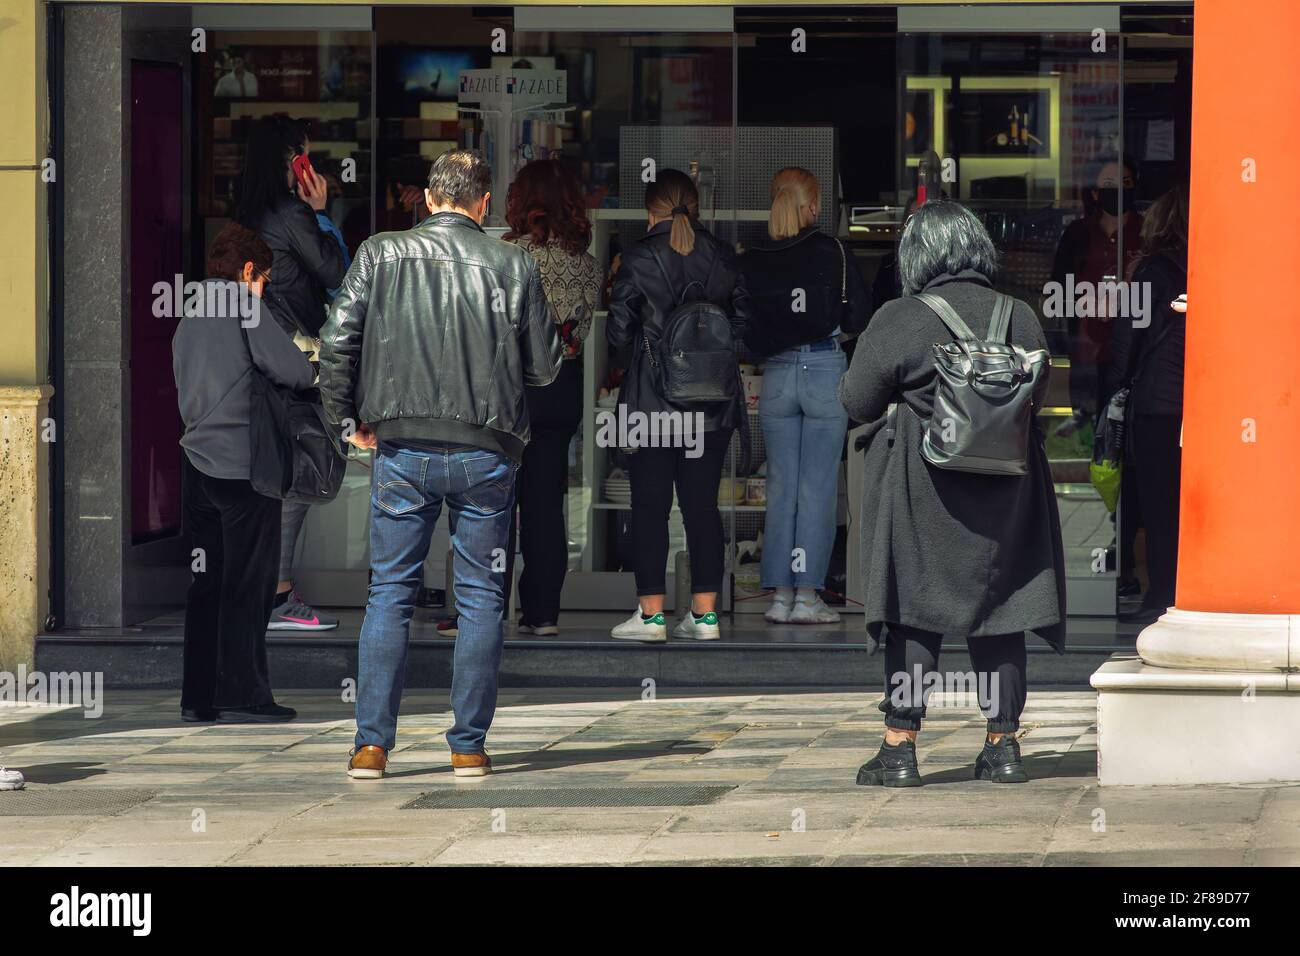 Thessaloniki, Griechenland - April 12 2021: Klicken Sie auf und sammeln Sie den offenen Ladeneingang mit wartenden Kunden. Schaufensterpräsentation von Ladenverkäufen mit einer Click-Away-Option aufgrund von covid-19-Sicherheitsvorkehrungen. Stockfoto